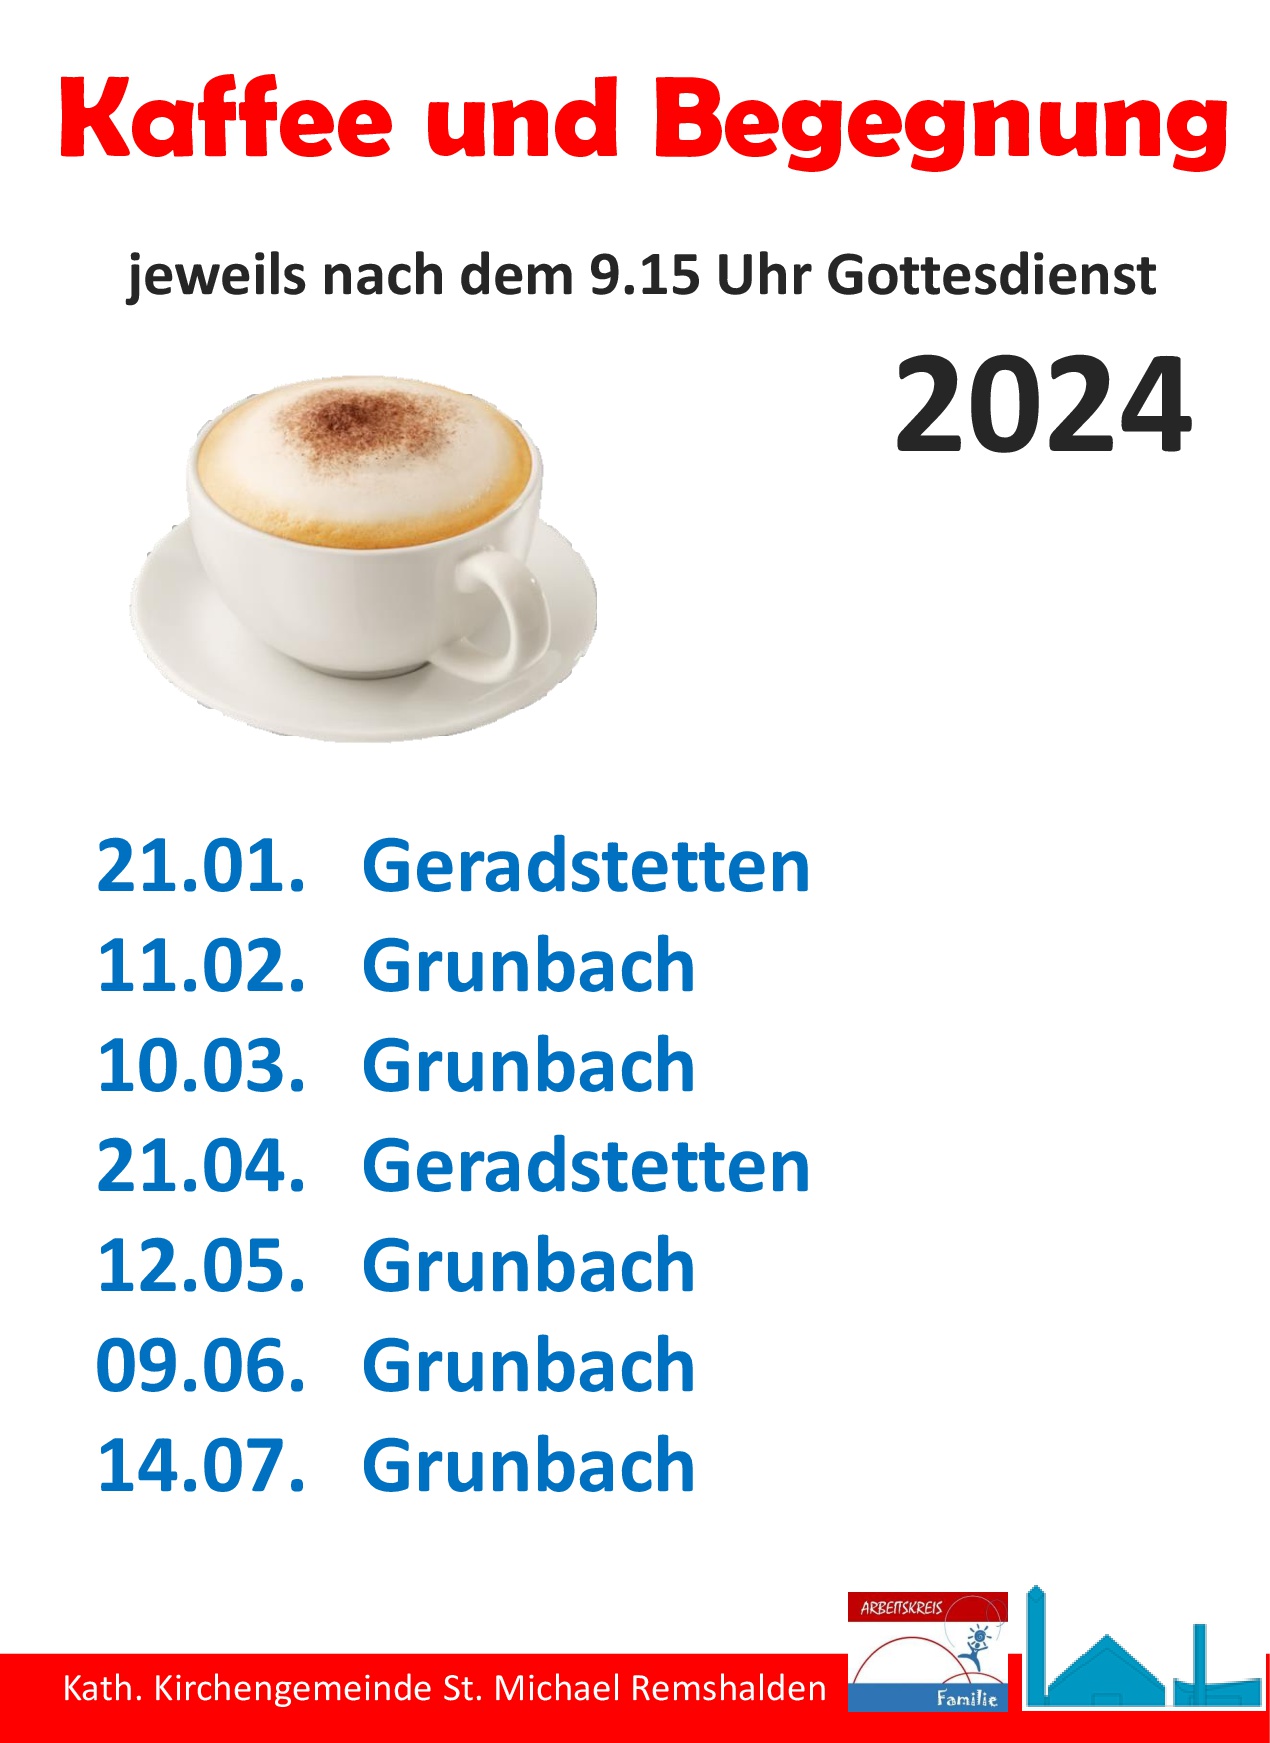 Kaffee und Begegnung Programm 2024 1 HJ.pptx